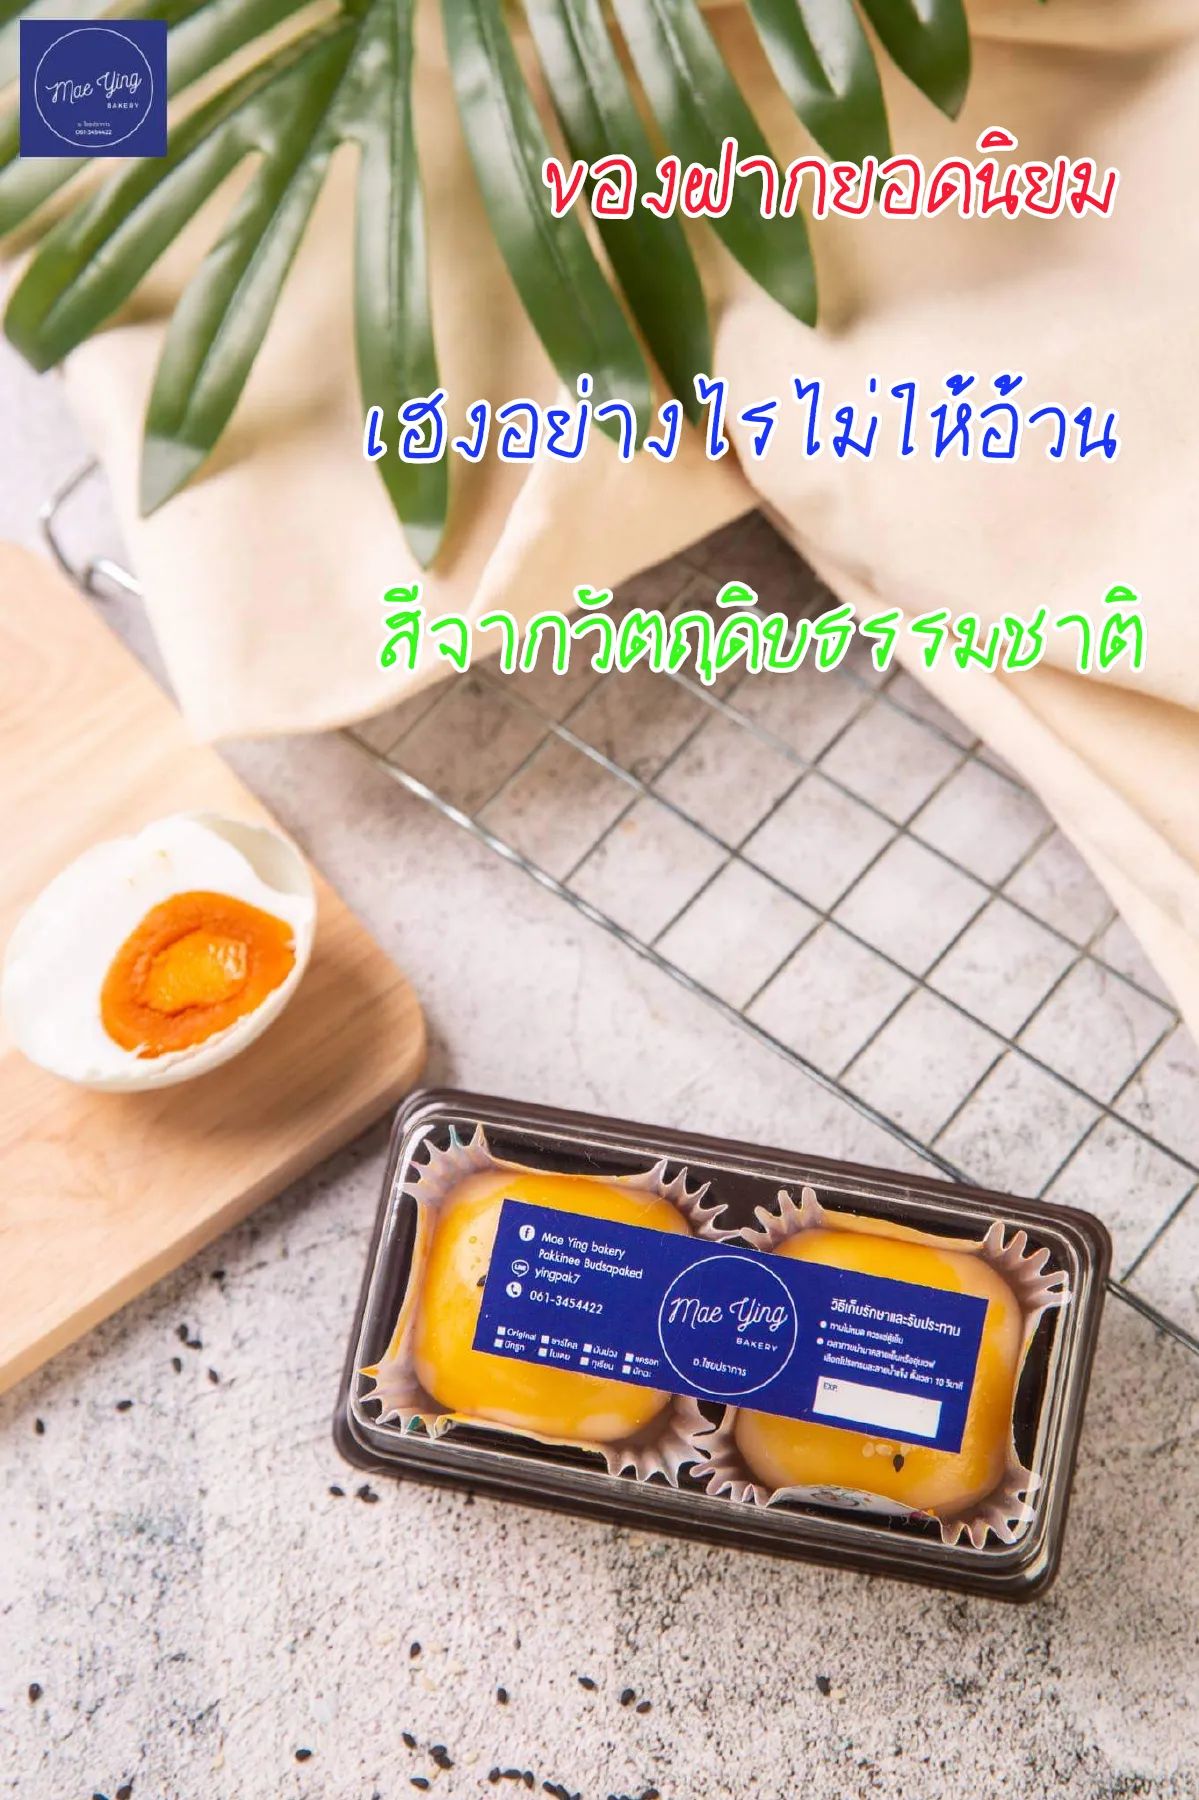 เปี๊ยะไข่เค็มลาวา2ชิ้น  by Mae Ying bakery  สูตรชาววังอบควันเทียน แป้งบาง ไข่เค็มลาวาแน่นๆเน้นๆ หอม อร่อย #พร้อมส่ง 100%natural Healthy